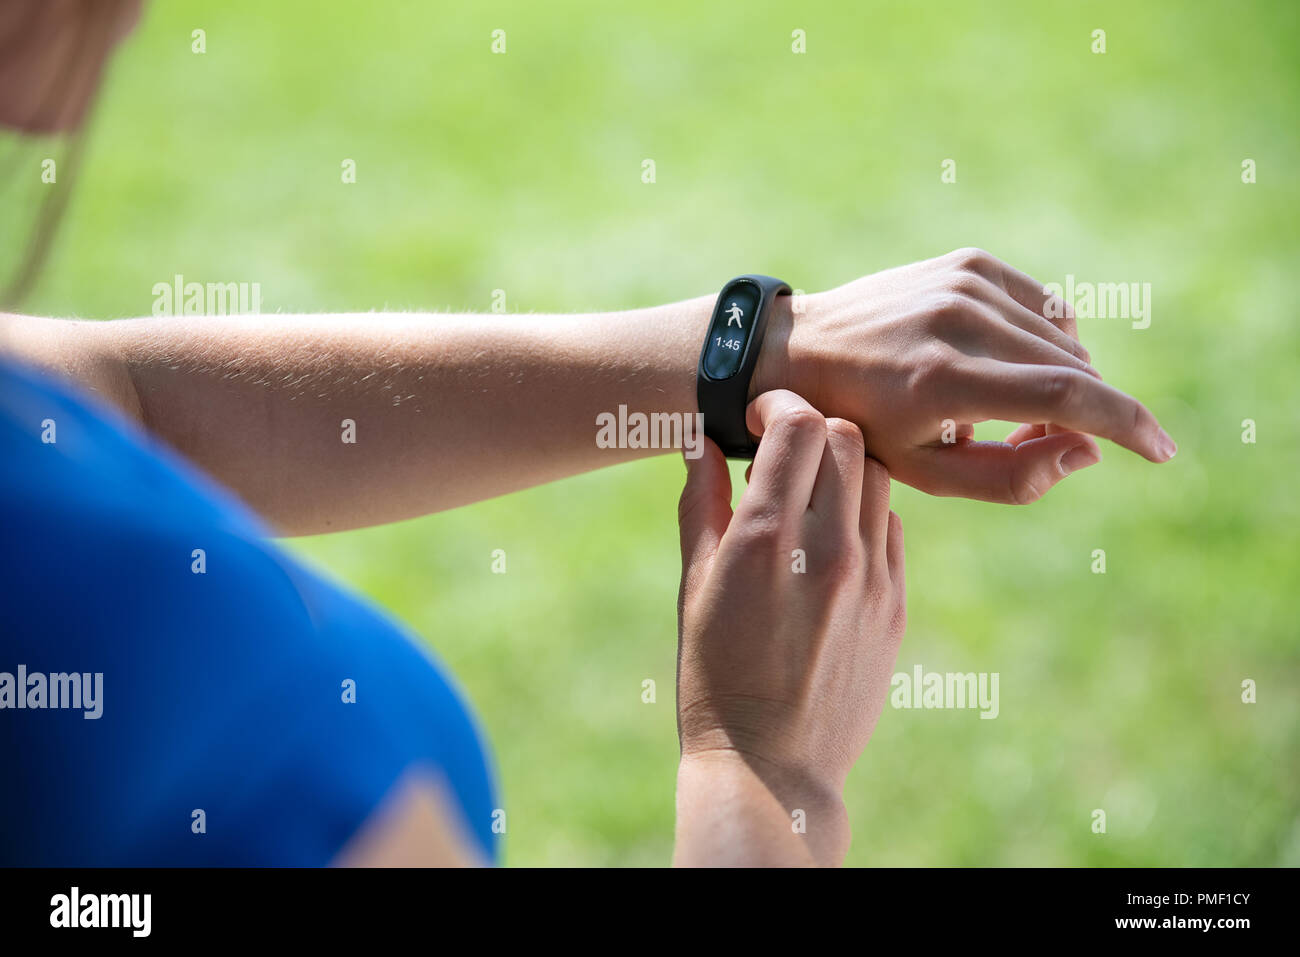 Der moderne Sport gadget Konzept - junge Frau mit einem smartband und ihr Training Überwachung in Nahaufnahme (gemischt). Stockfoto